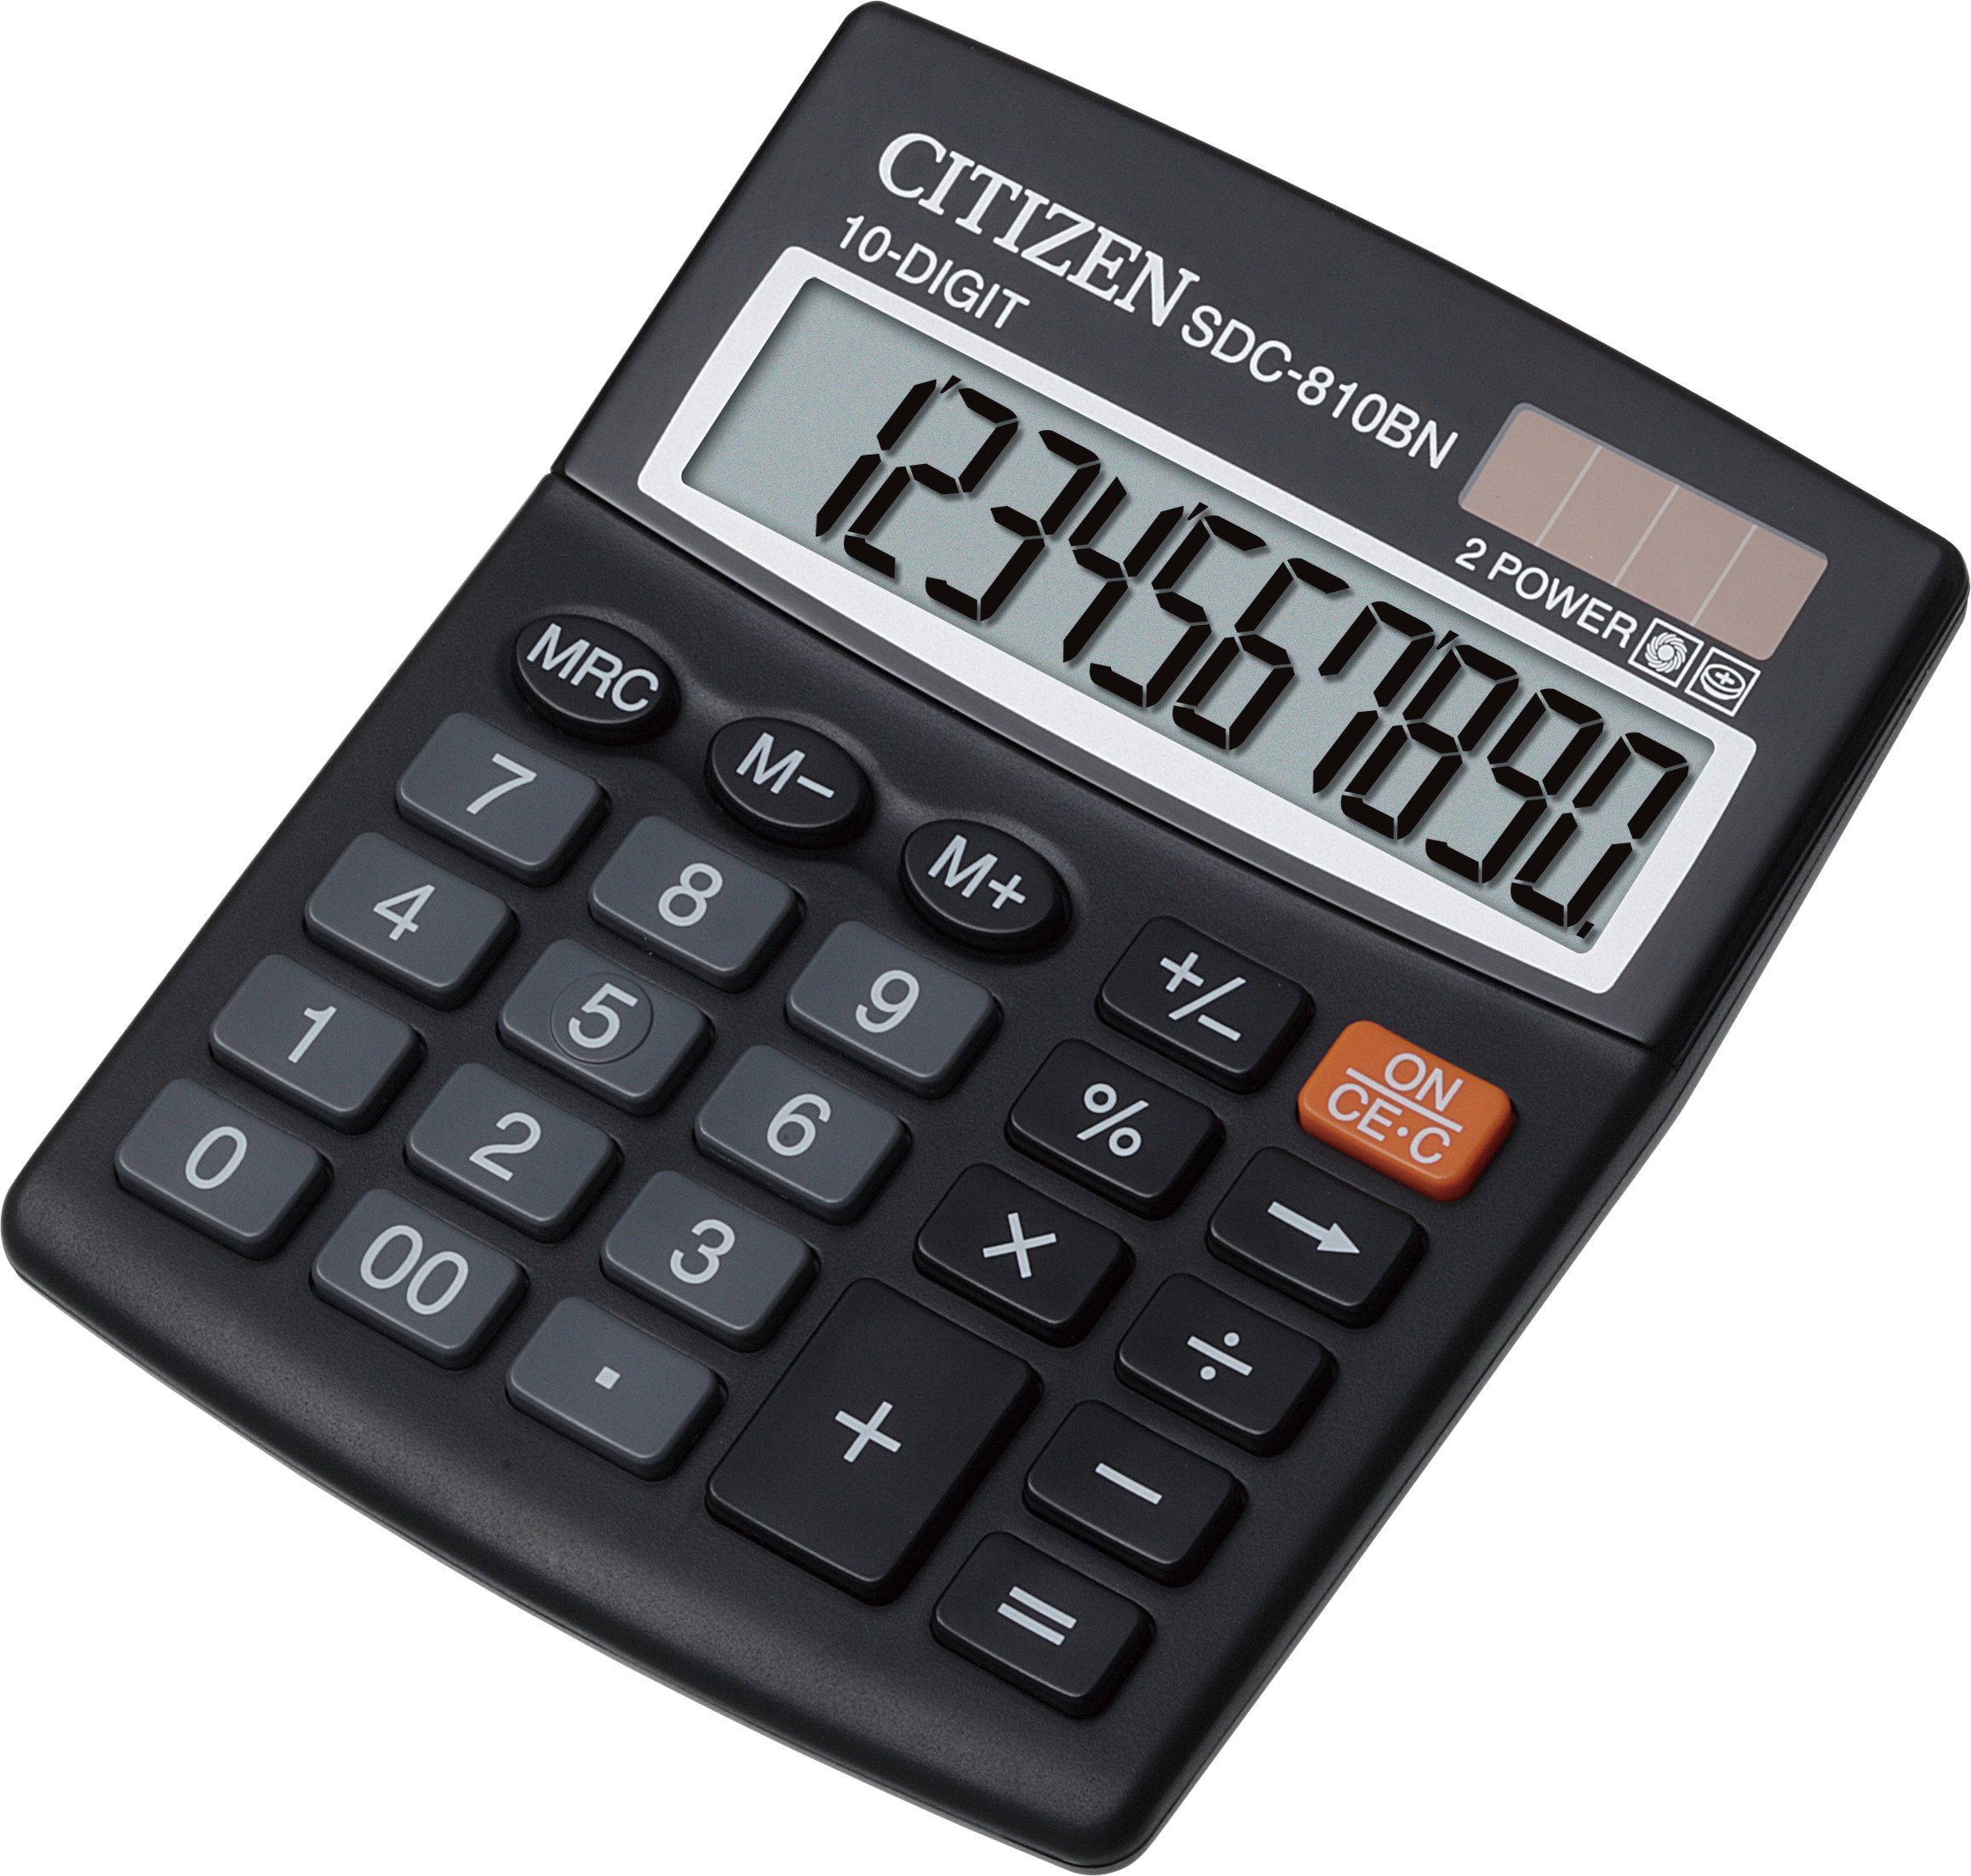 Calcolatrice tavolo Citizen sdc-810ii solare o batterie 10 cifre